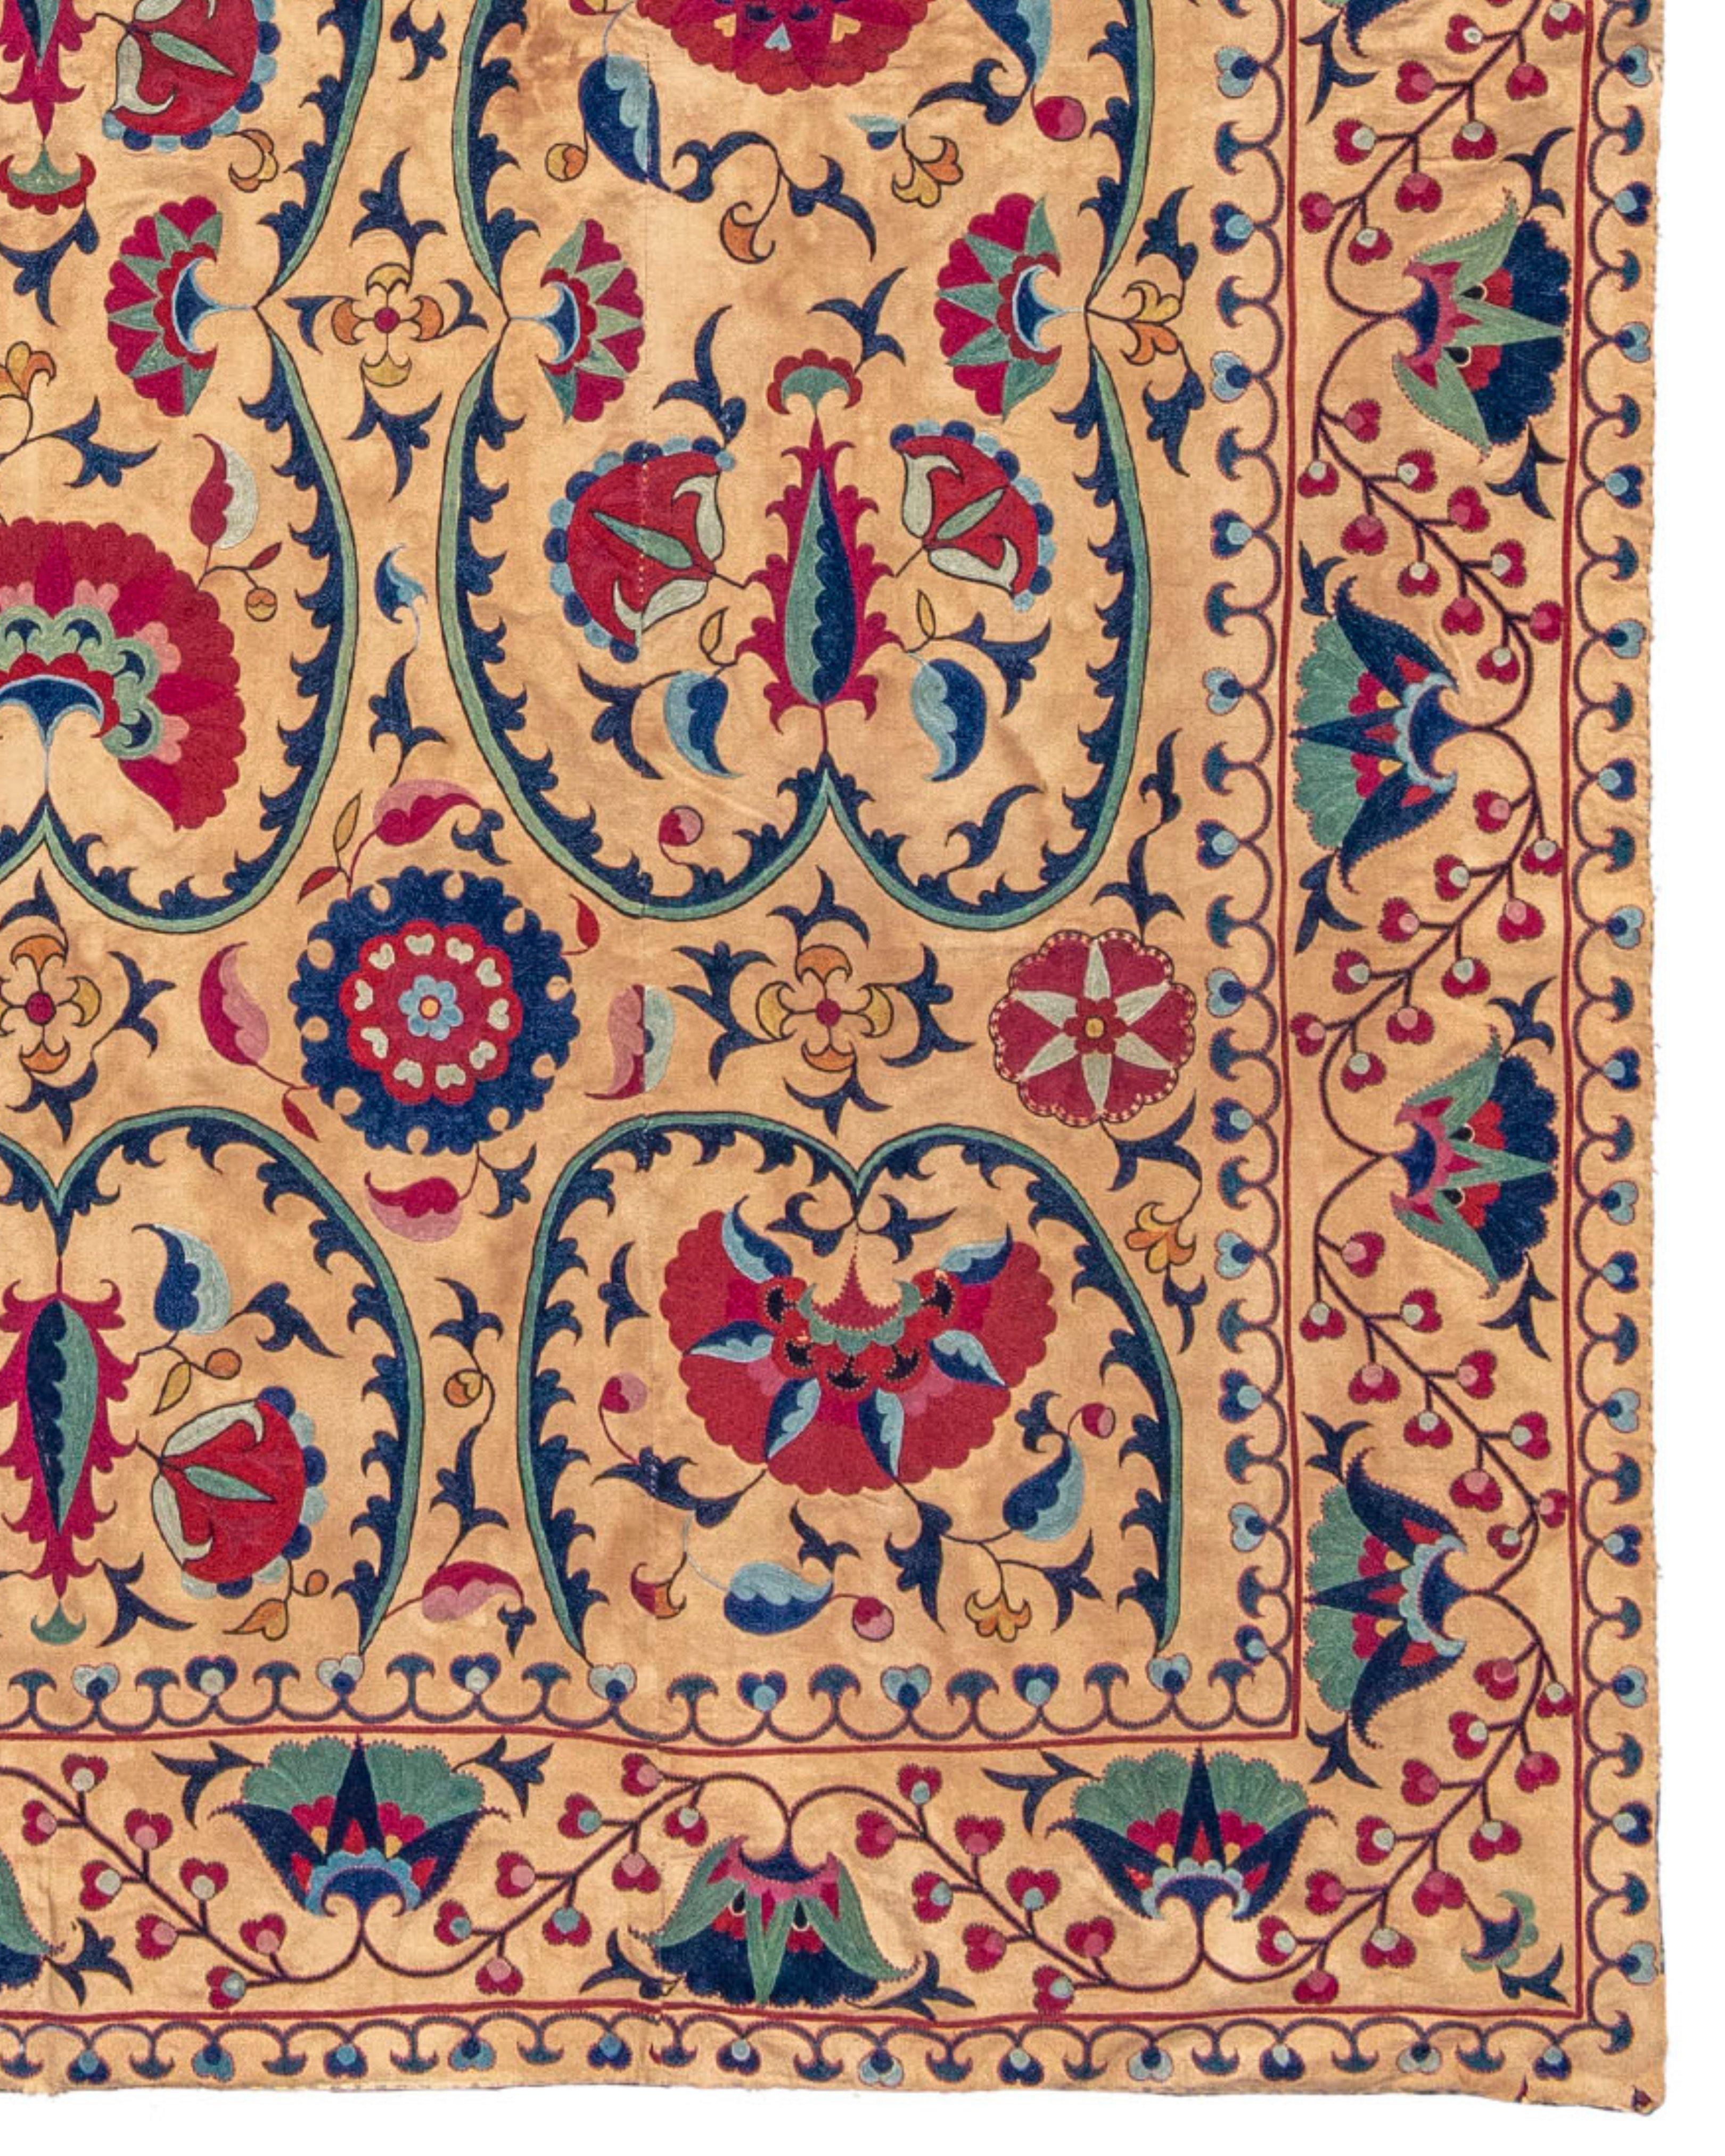 Antike usbekische Suzani-Stickdecke, 19. Jahrhundert

Dieses Stück ist Teil der David McInnis Collection.

Zusätzliche Informationen:
Abmessungen: 5'5